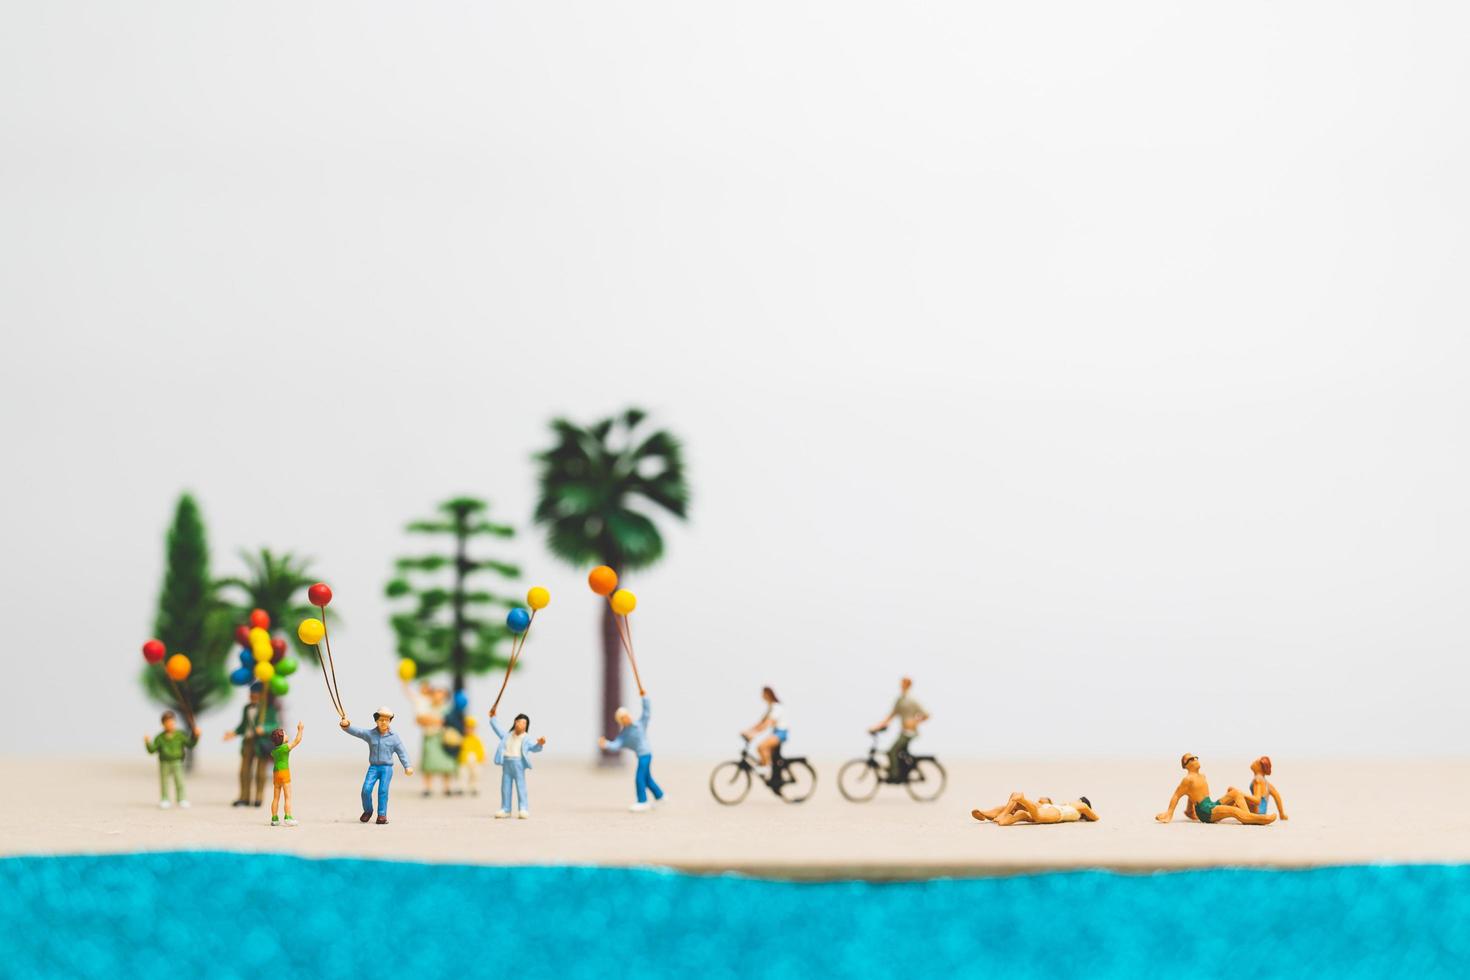 Gente en miniatura disfrutando de las vacaciones de verano en la playa. foto